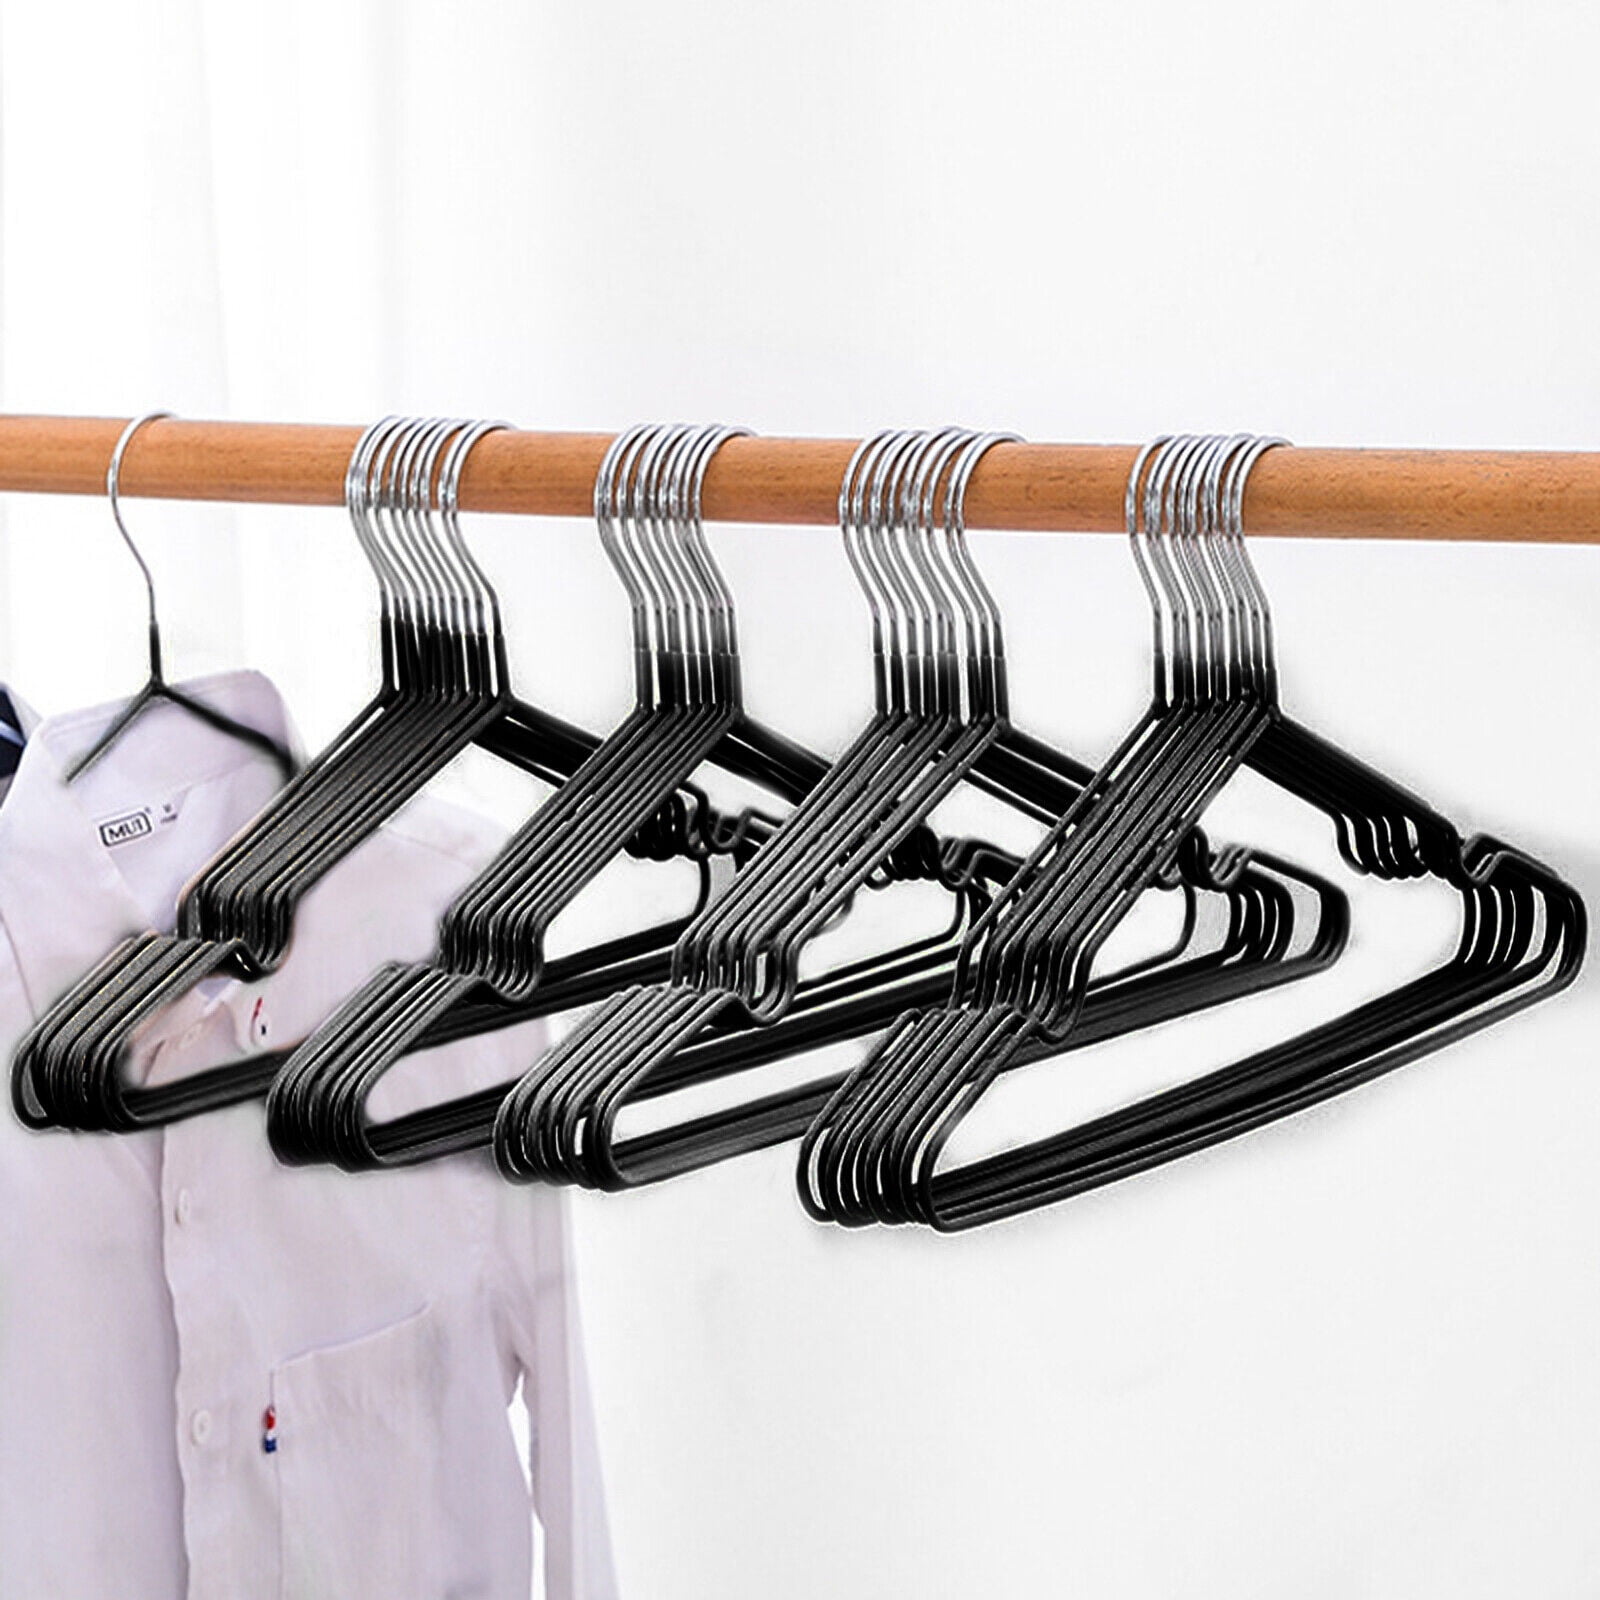 30pcs Heavy Duty Metal Wire Suit Clothes Hangers 16